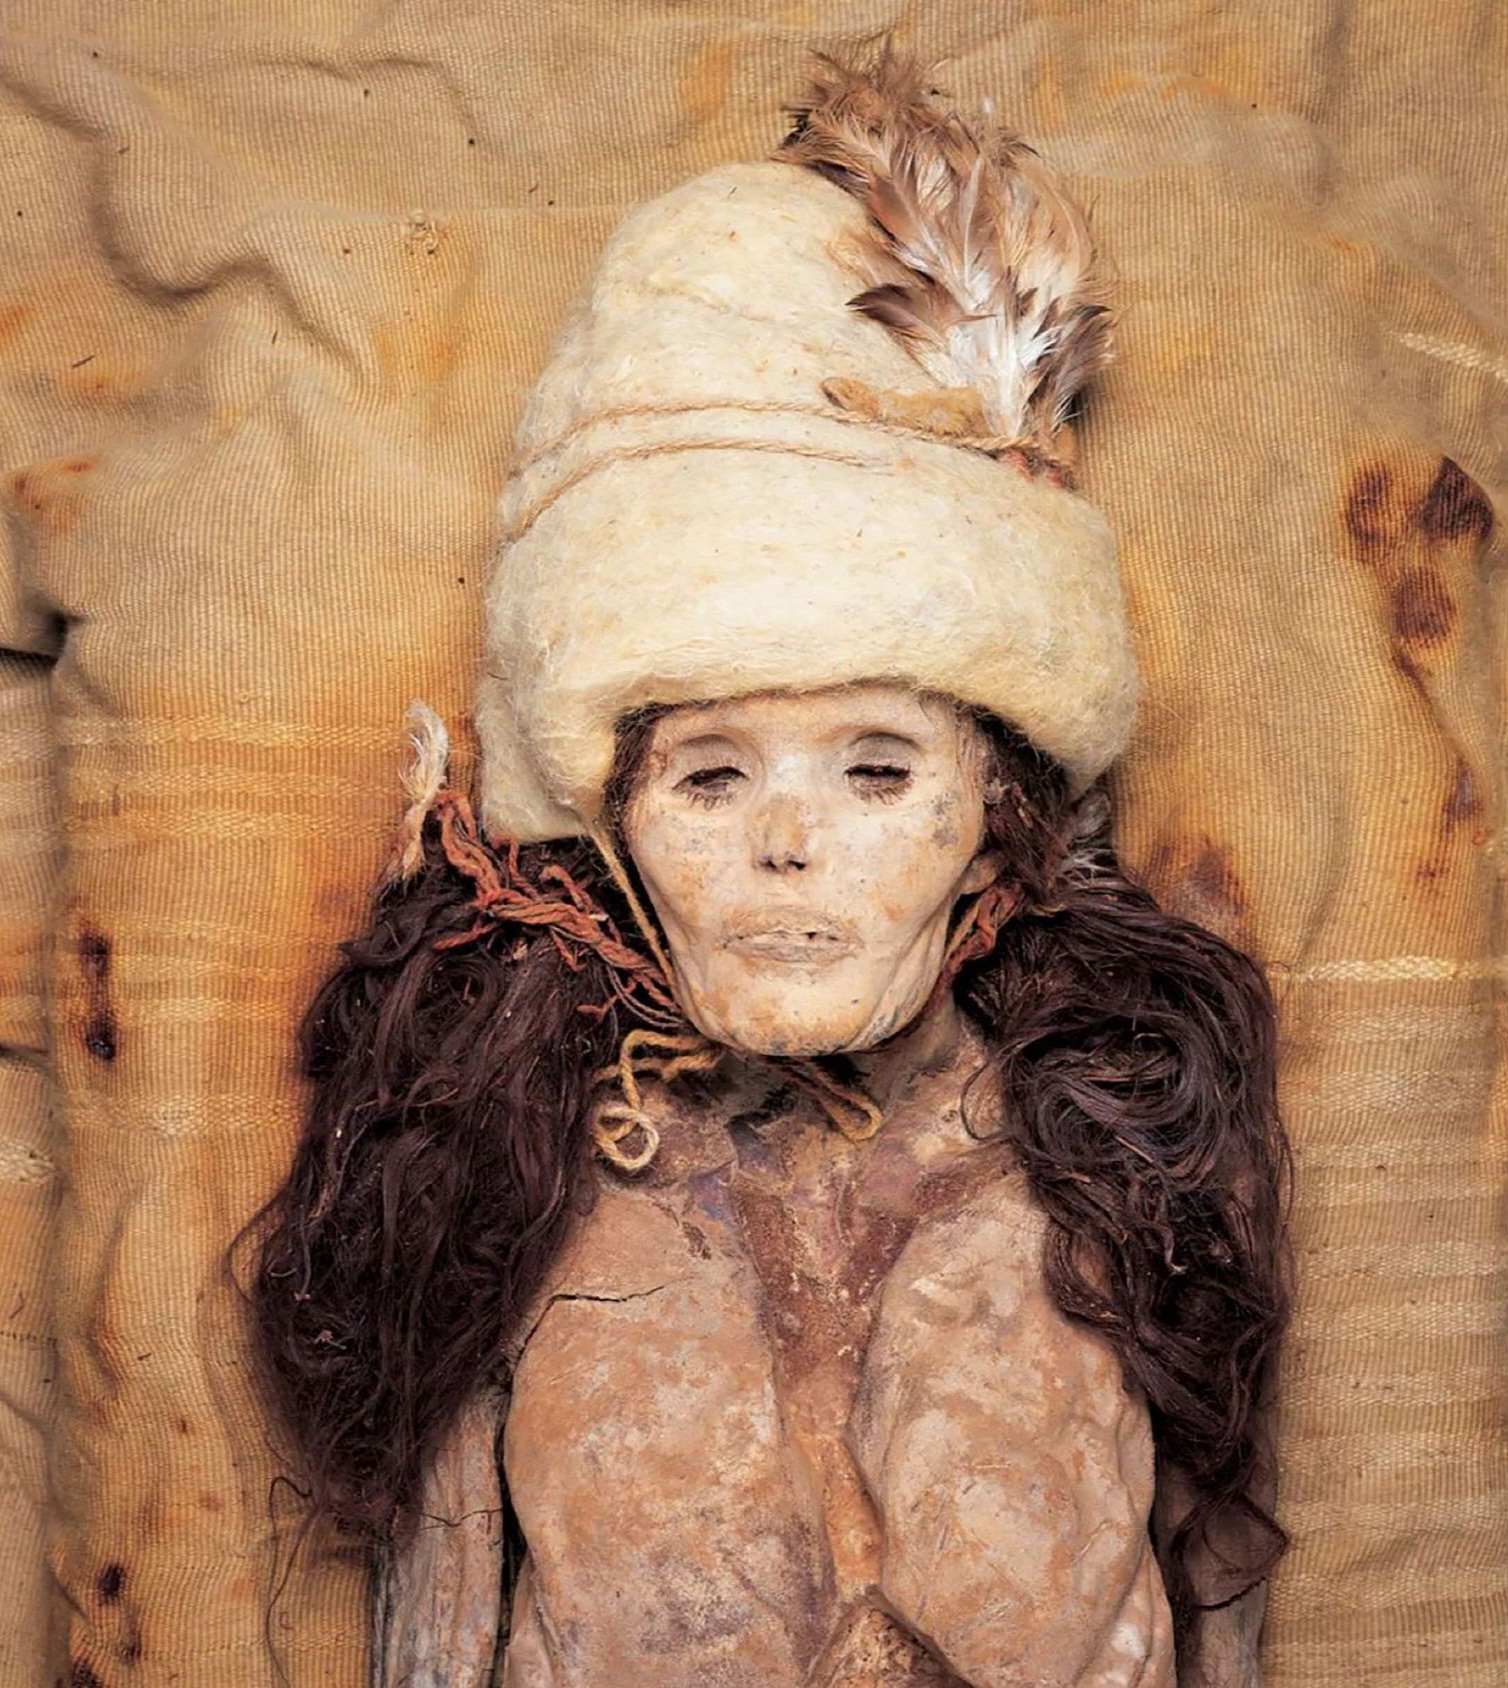 Mystiske mumier fundet i kinesisk ørken har en uventet oprindelse knyttet til Sibirien og Amerika 1